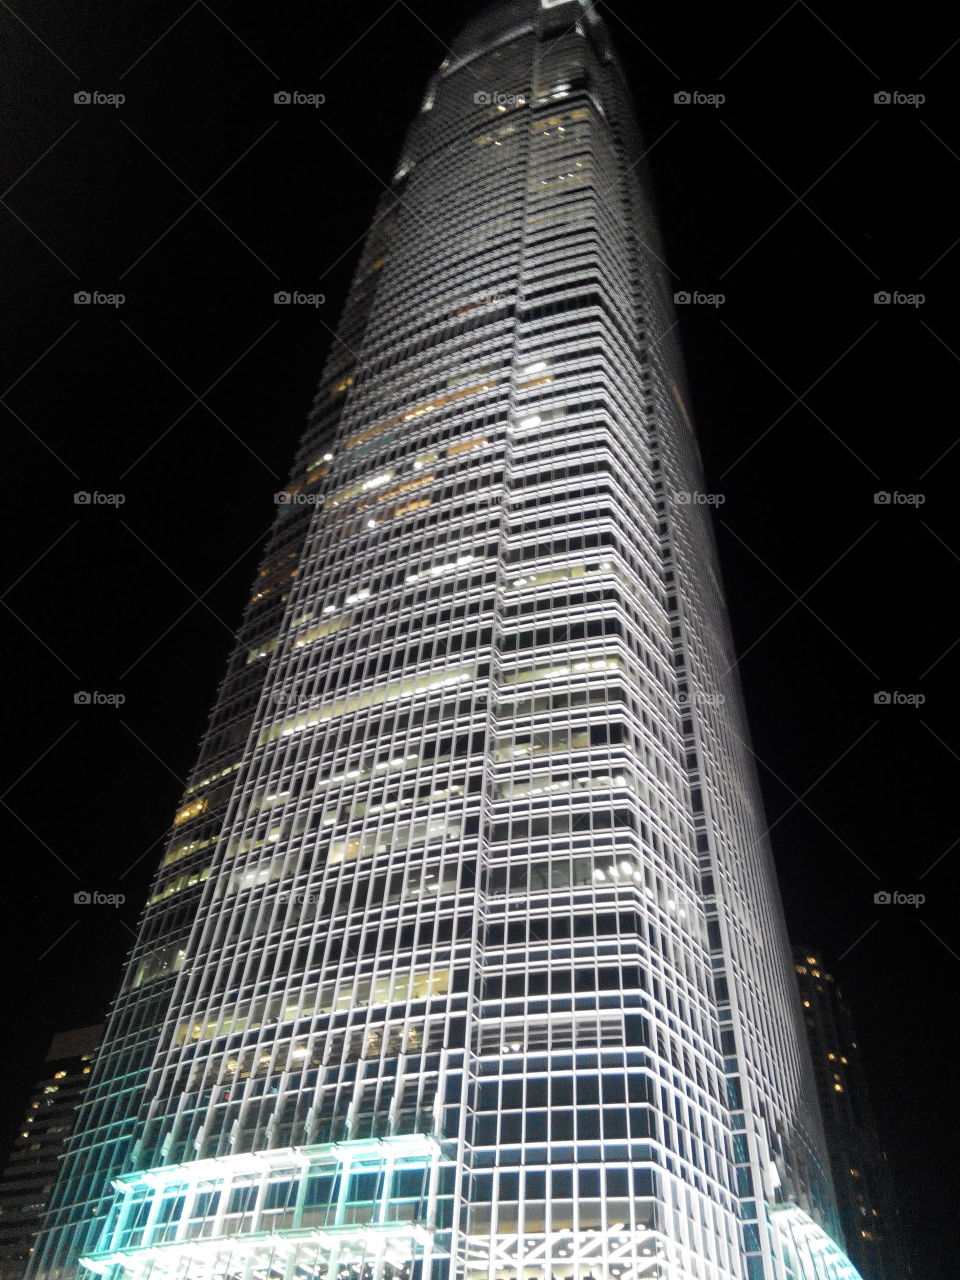 skyskraper at night. skyskraper in hong kong at night